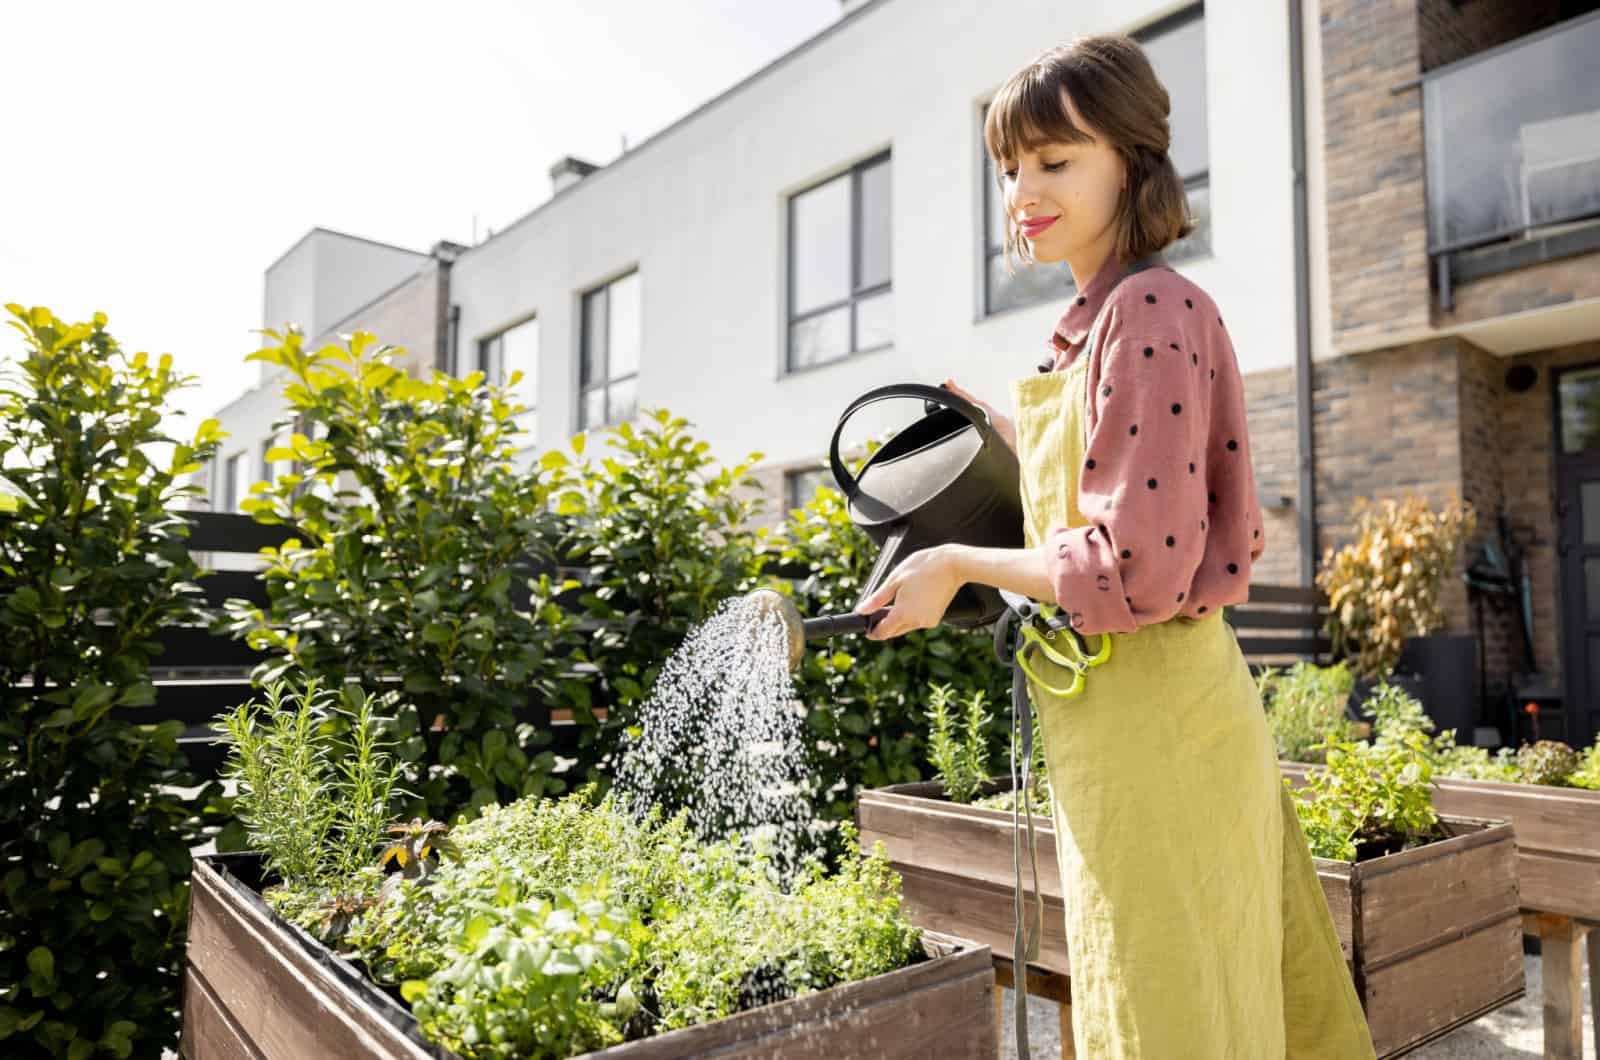 woman watering herbs in garden